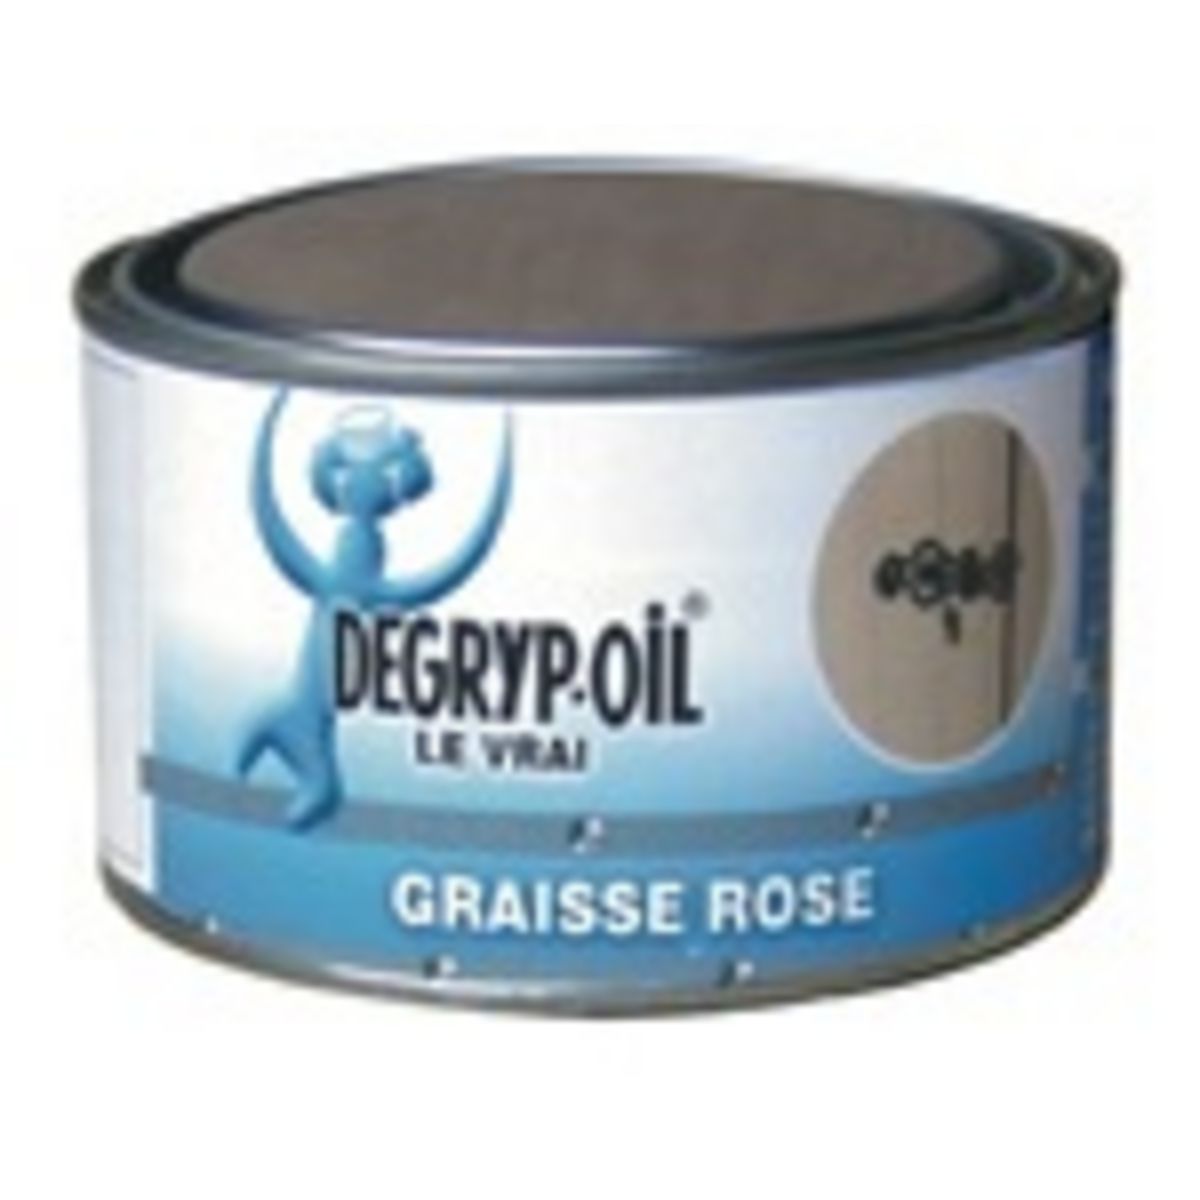 DEGRYP OIL Graisse rose 300 g